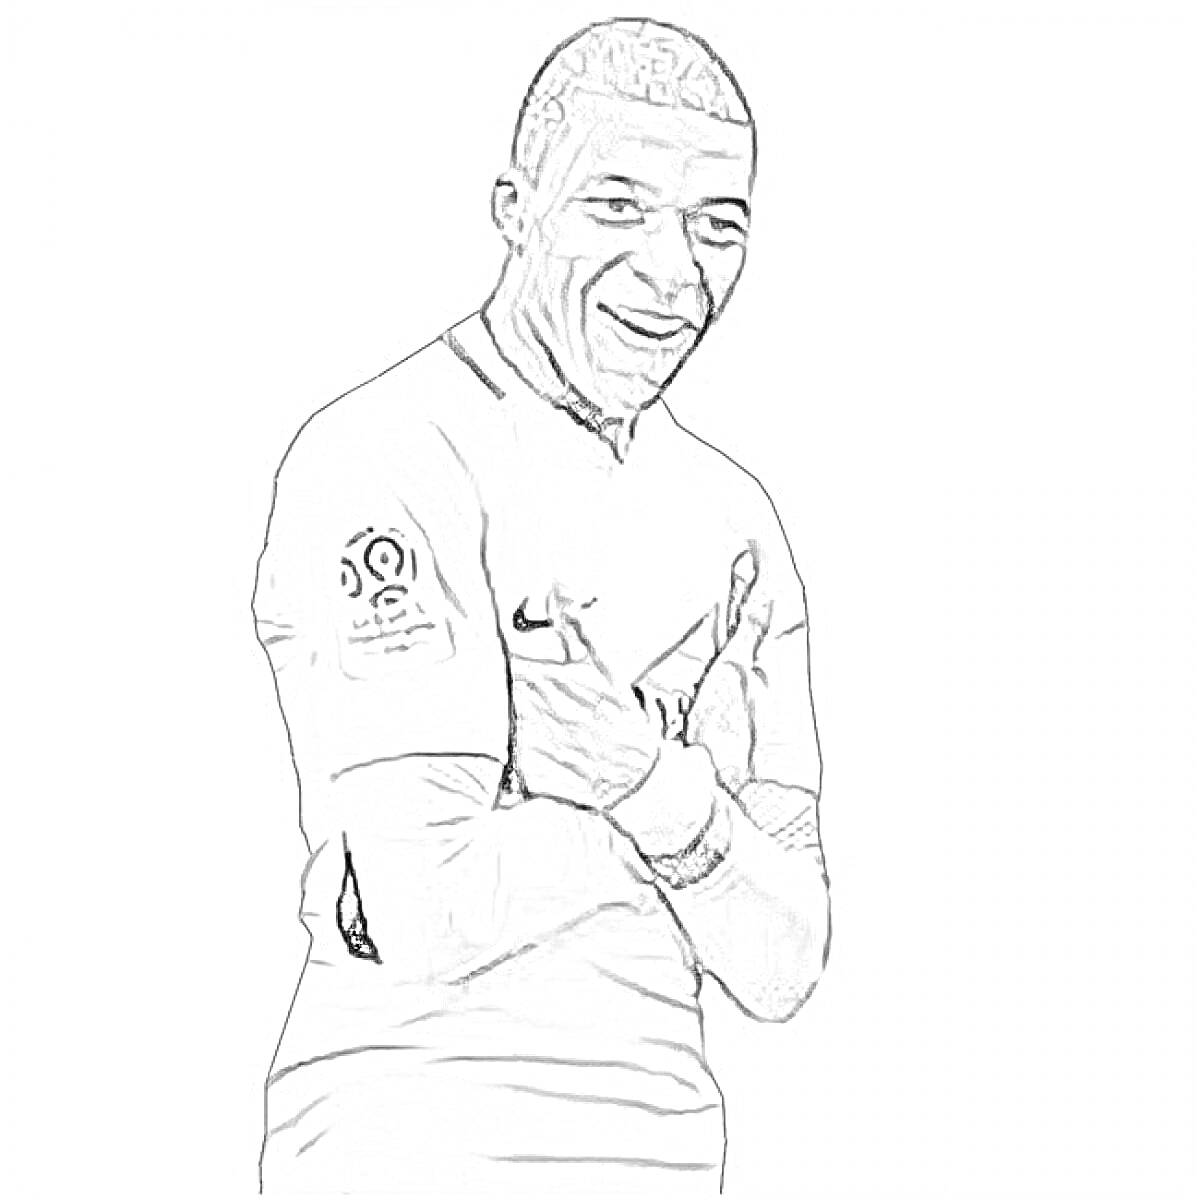 Раскраска футболист в униформе с жестом руками